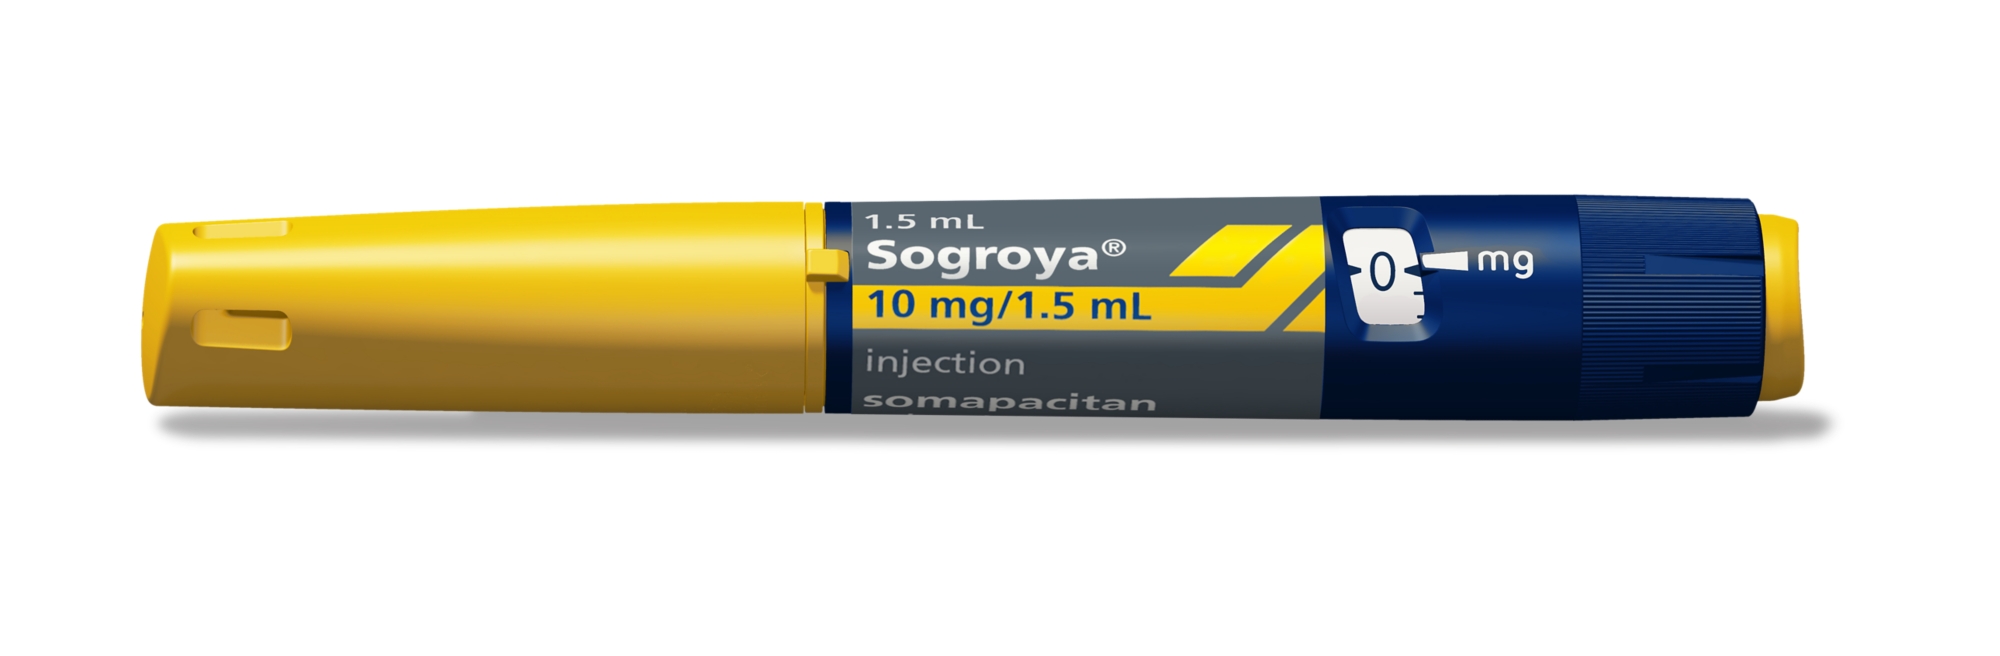 Sogroya pen 10 mg/1.5 mL